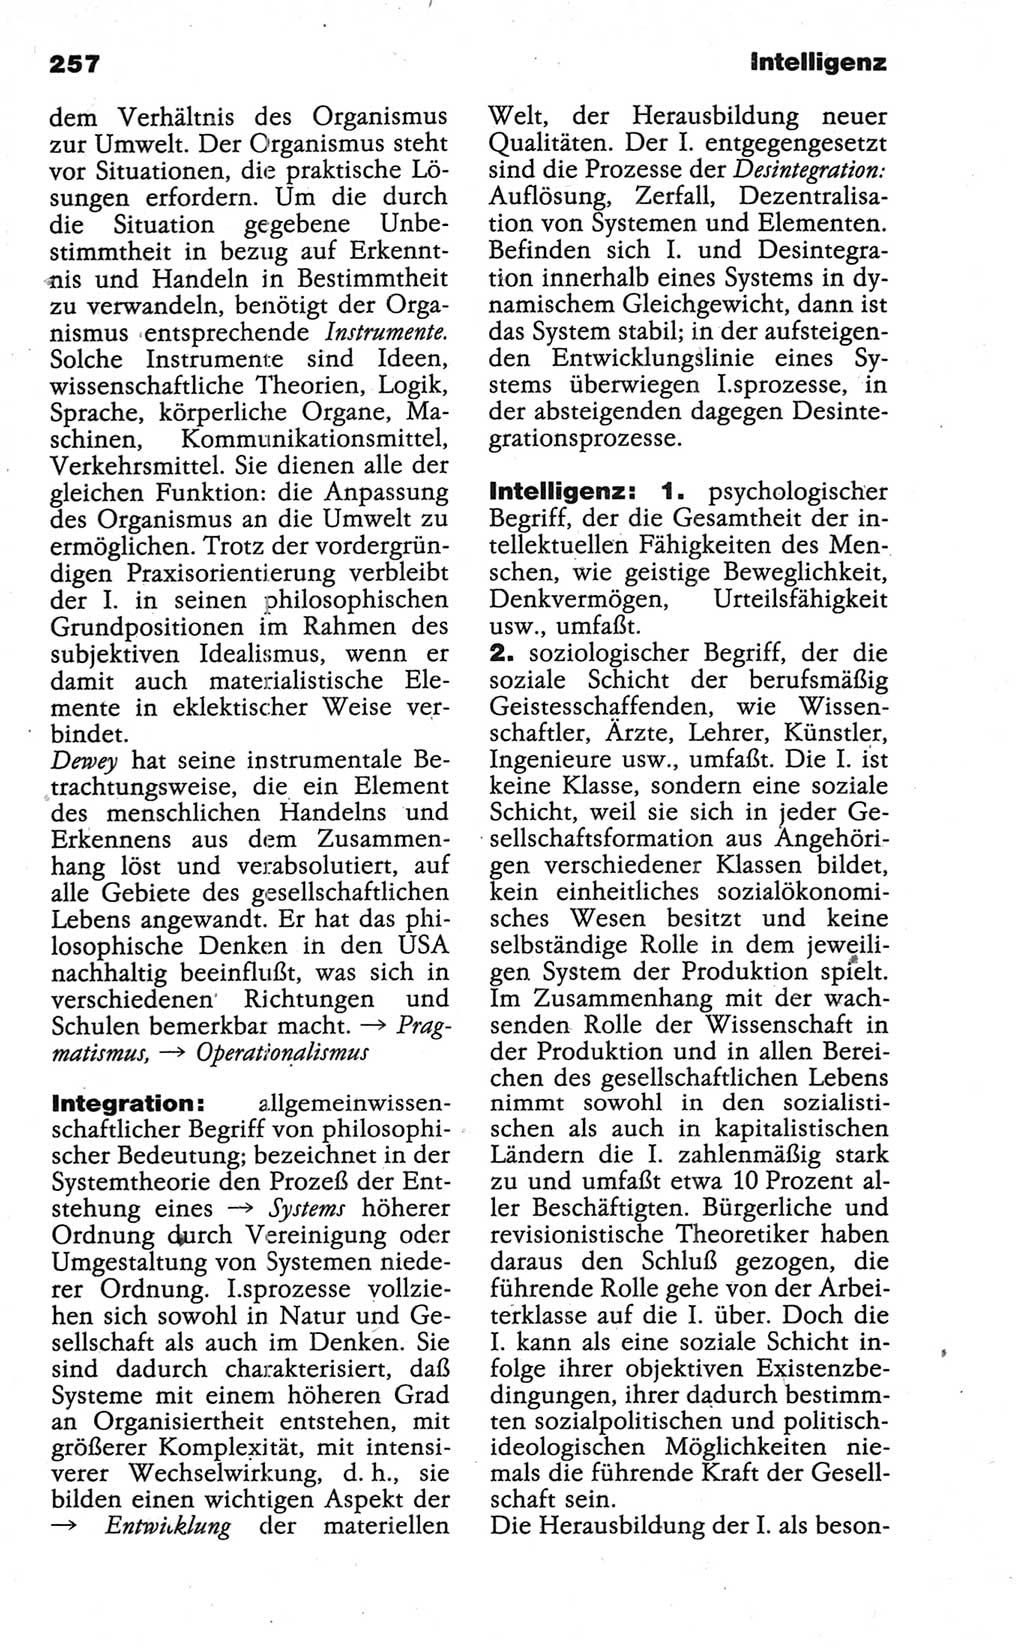 Wörterbuch der marxistisch-leninistischen Philosophie [Deutsche Demokratische Republik (DDR)] 1986, Seite 257 (Wb. ML Phil. DDR 1986, S. 257)